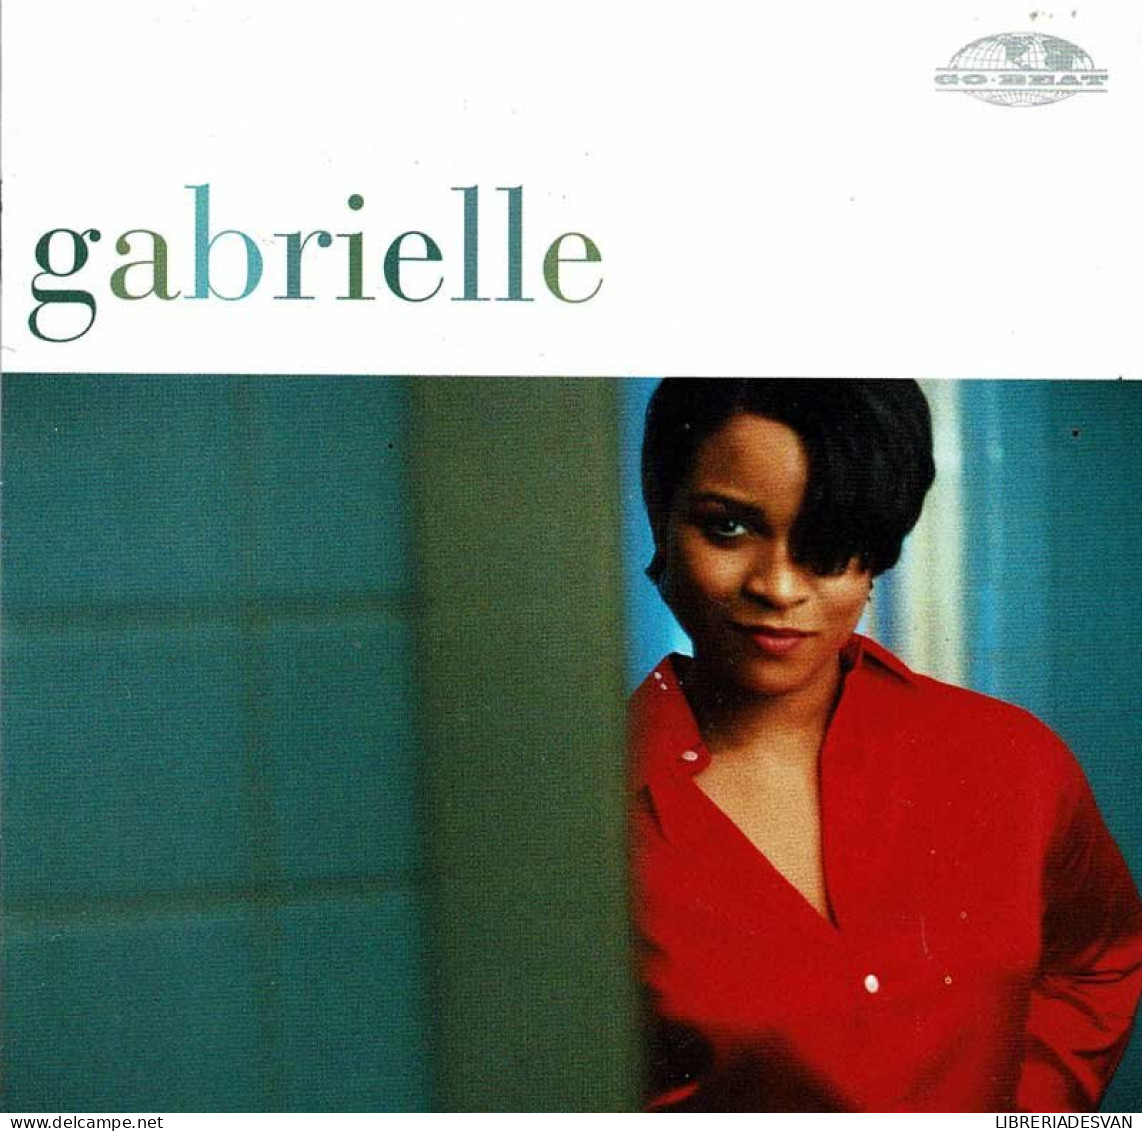 Gabrielle - Gabrielle. CD - Disco, Pop